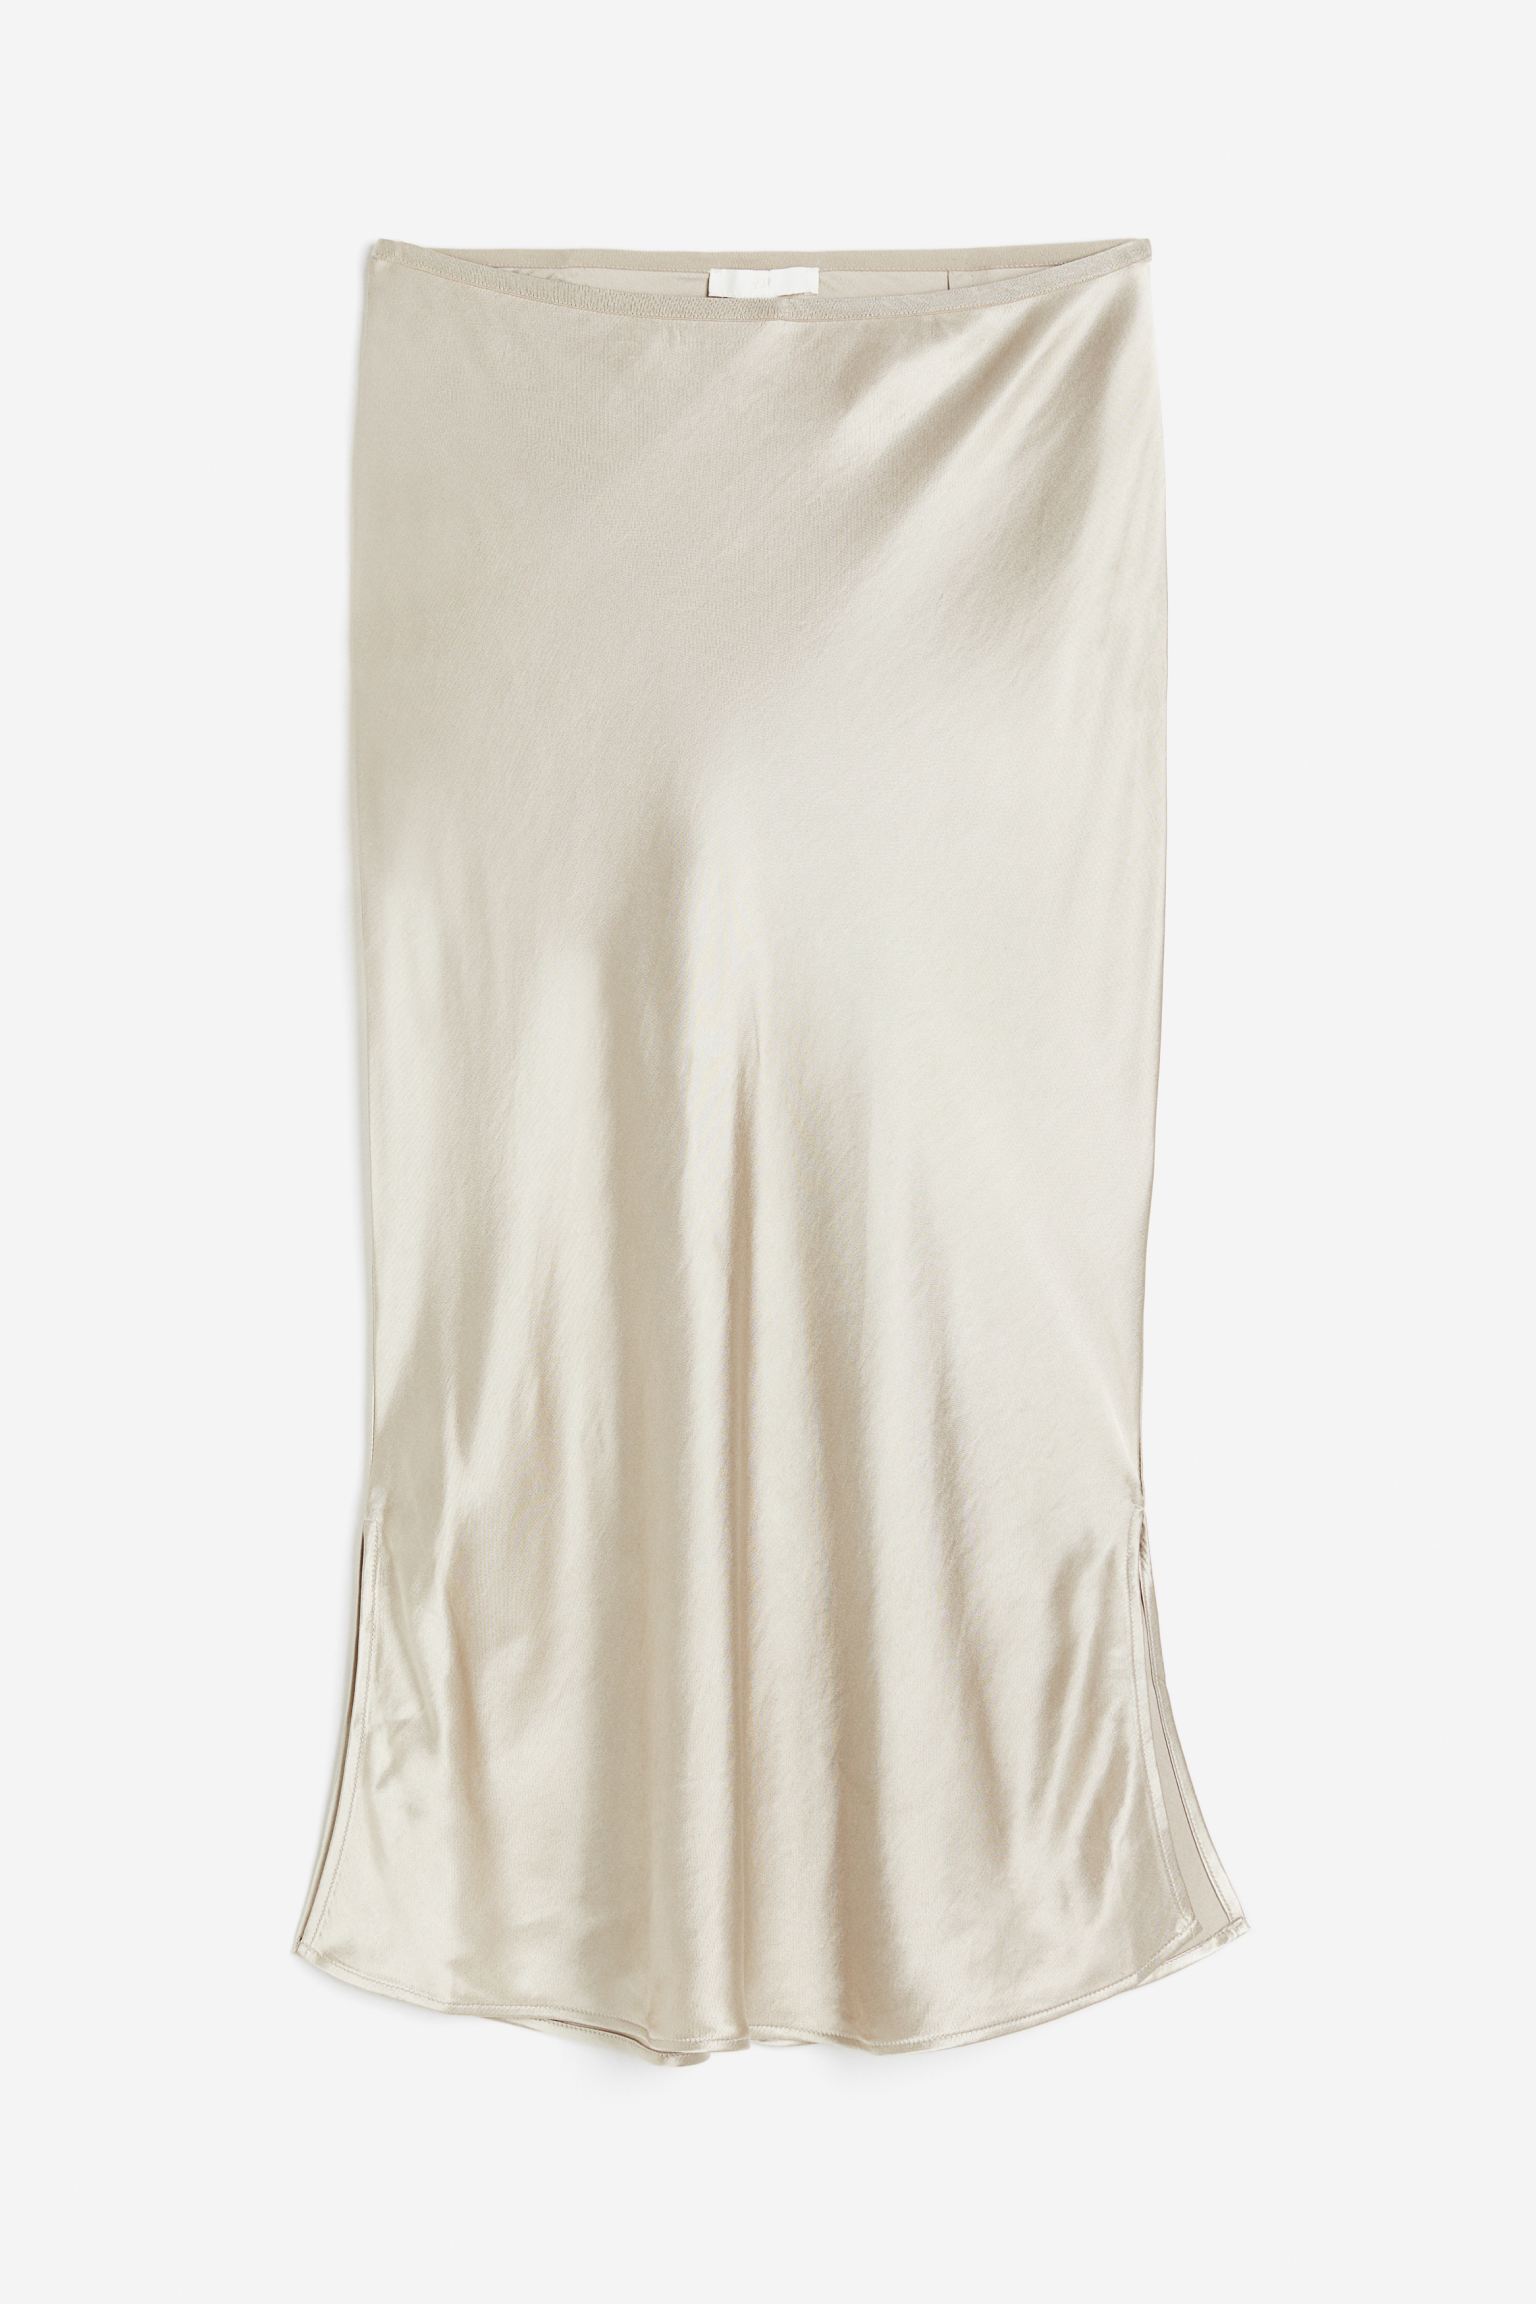 Юбка H&M Satin, светло-бежевый бермуды средняя посадка без карманов пояс на резинке размер 50 белый